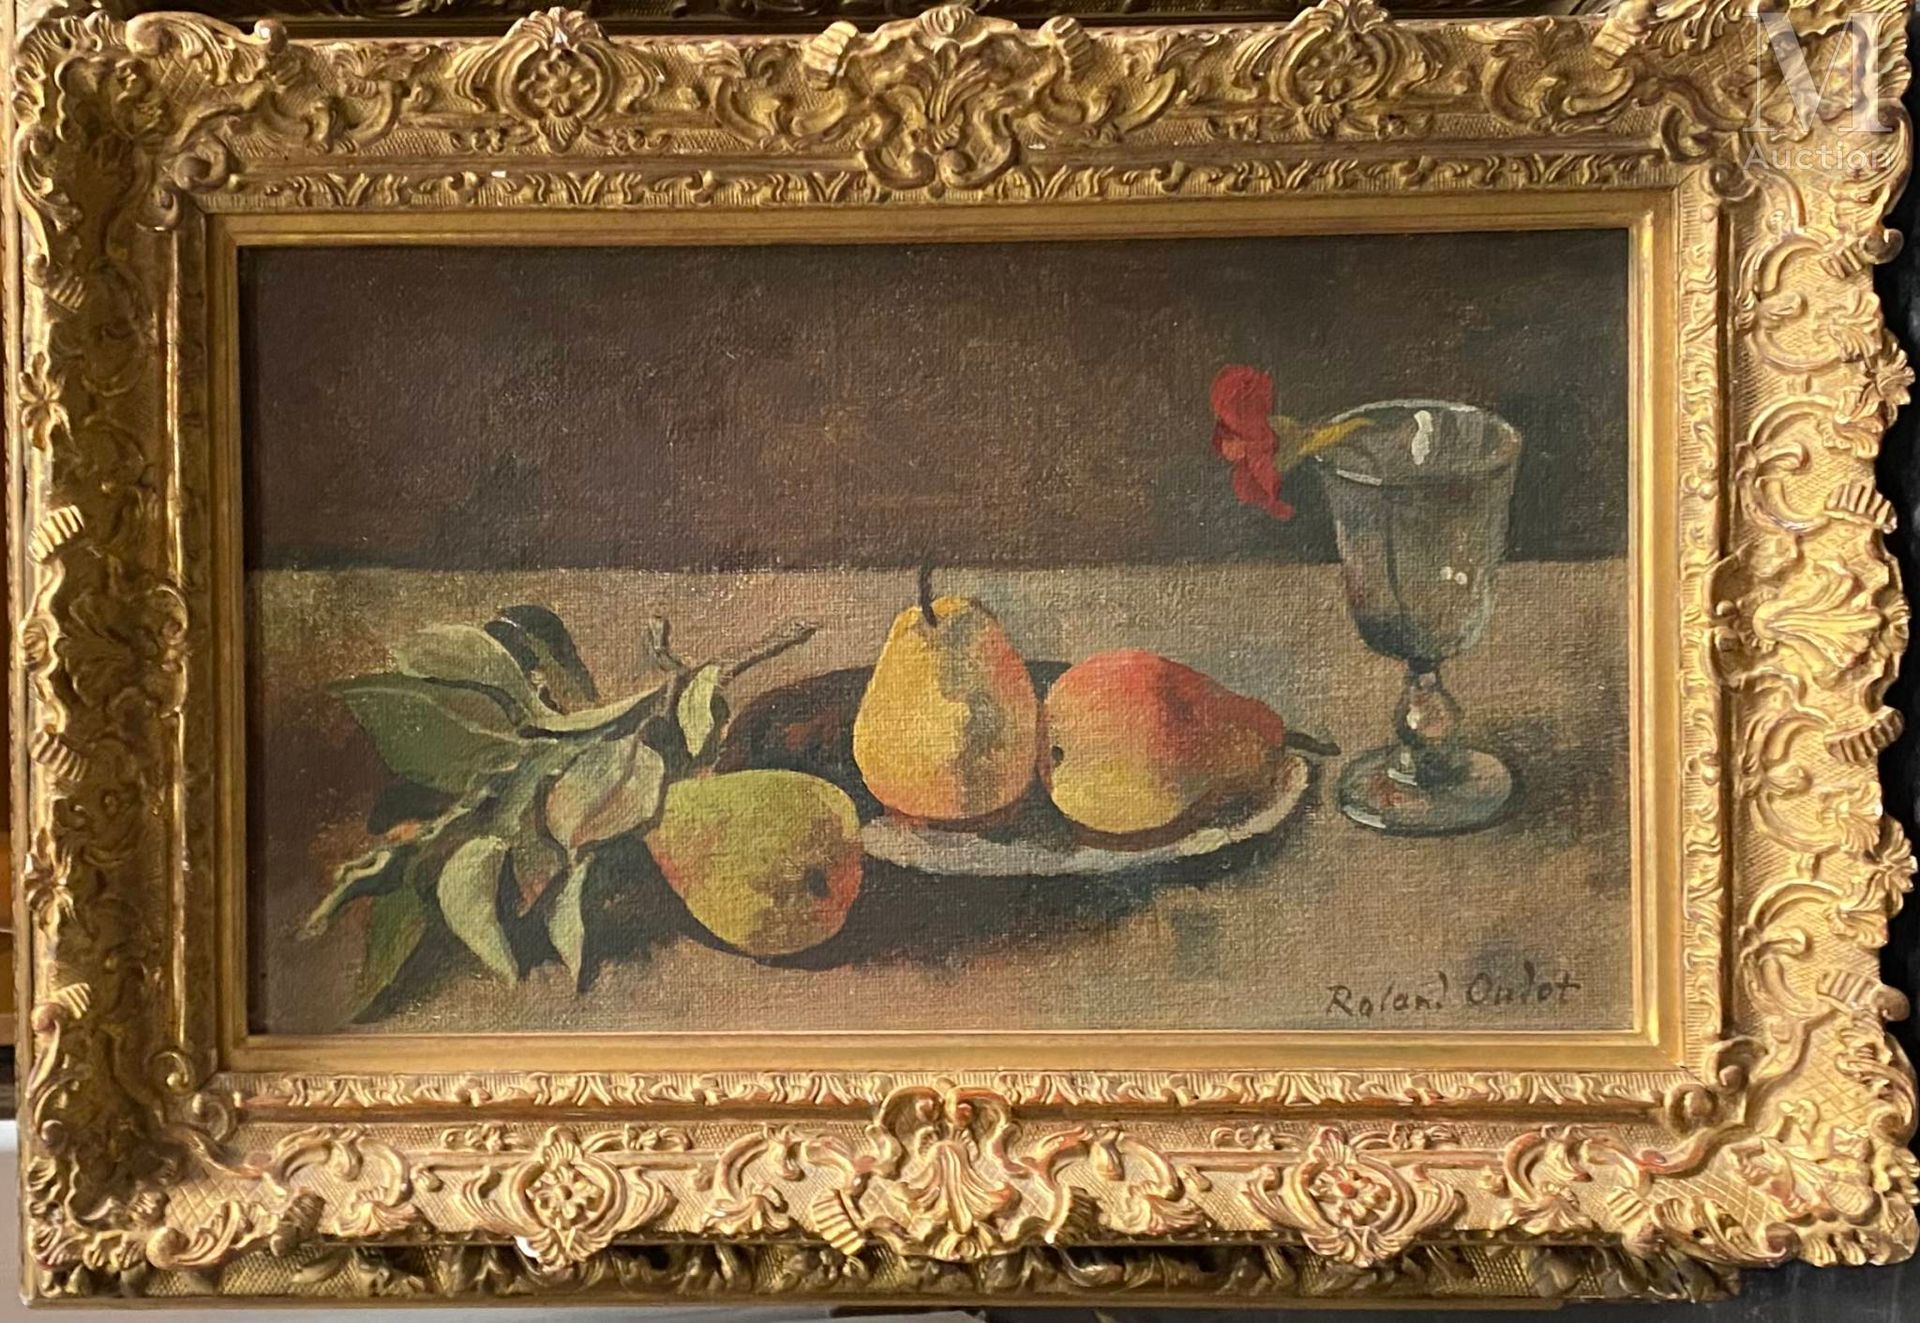 Roland OUDOT (Paris 1897 - Paris 1981) 梨子和玻璃的构成



原始画布上的油画

26 x 45厘米。

右下角有签名 &hellip;